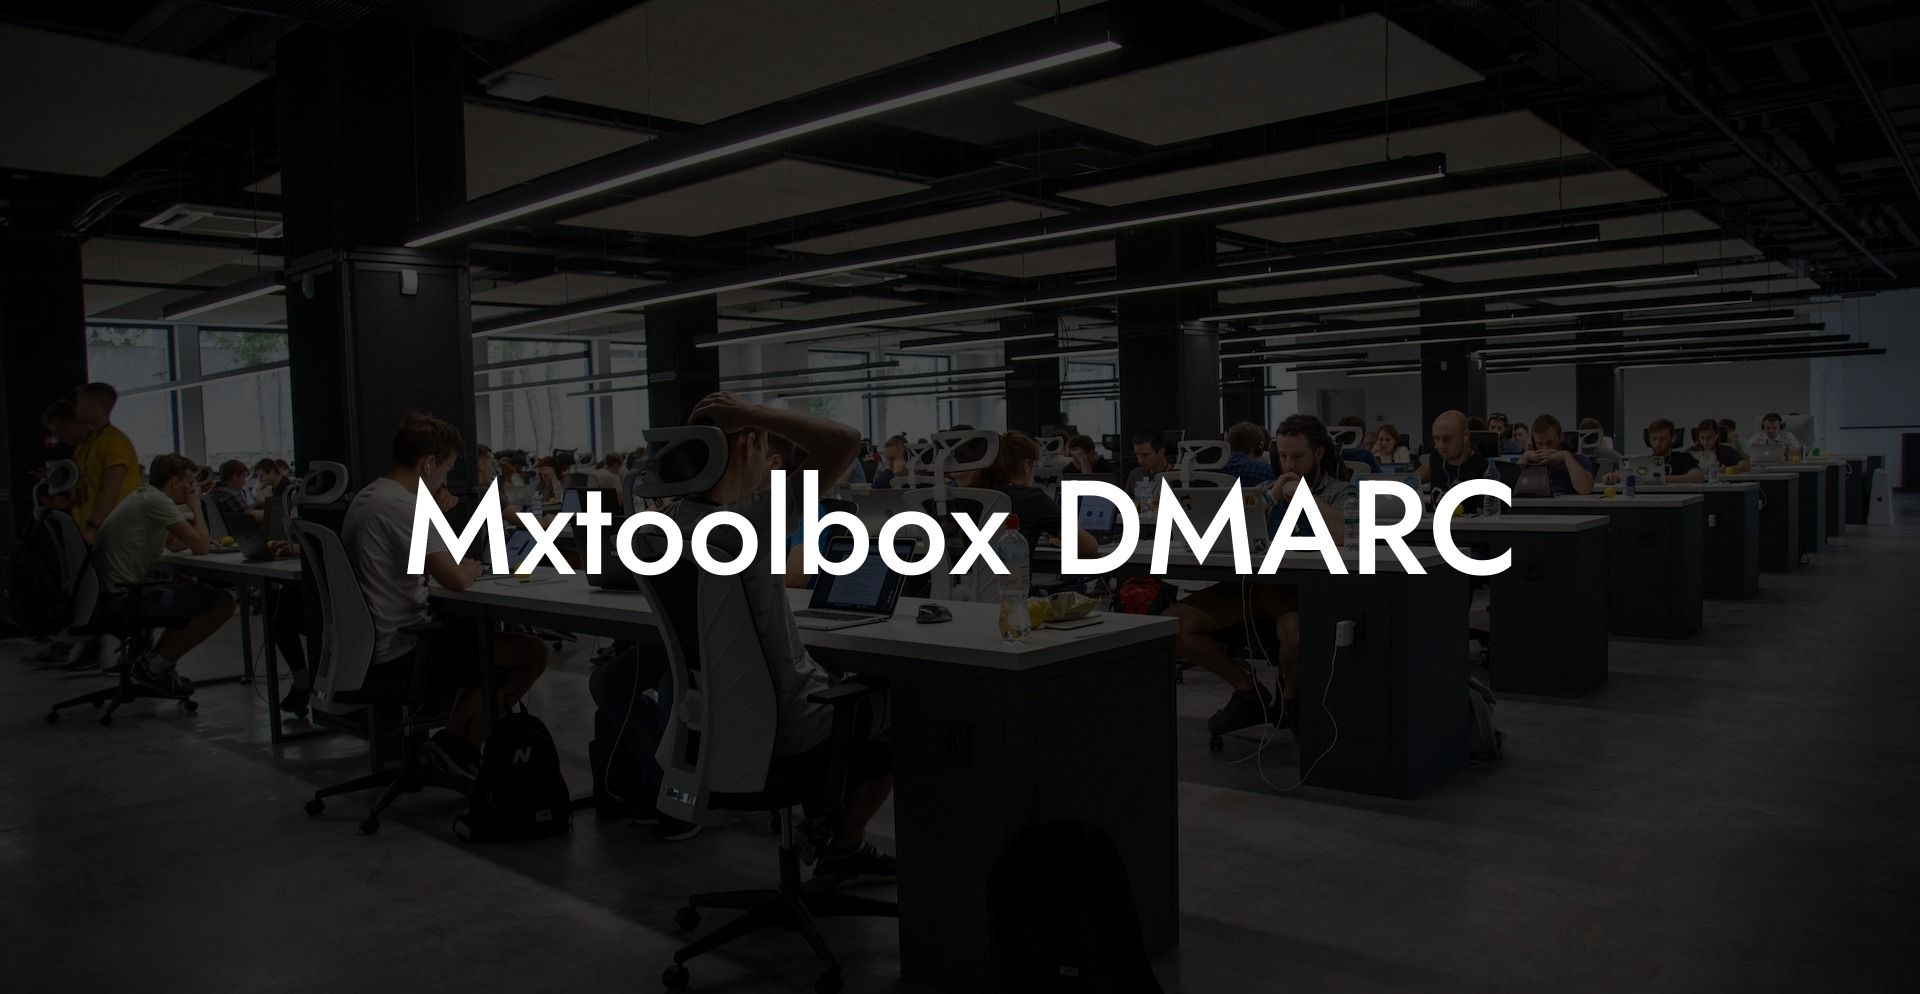 Mxtoolbox DMARC